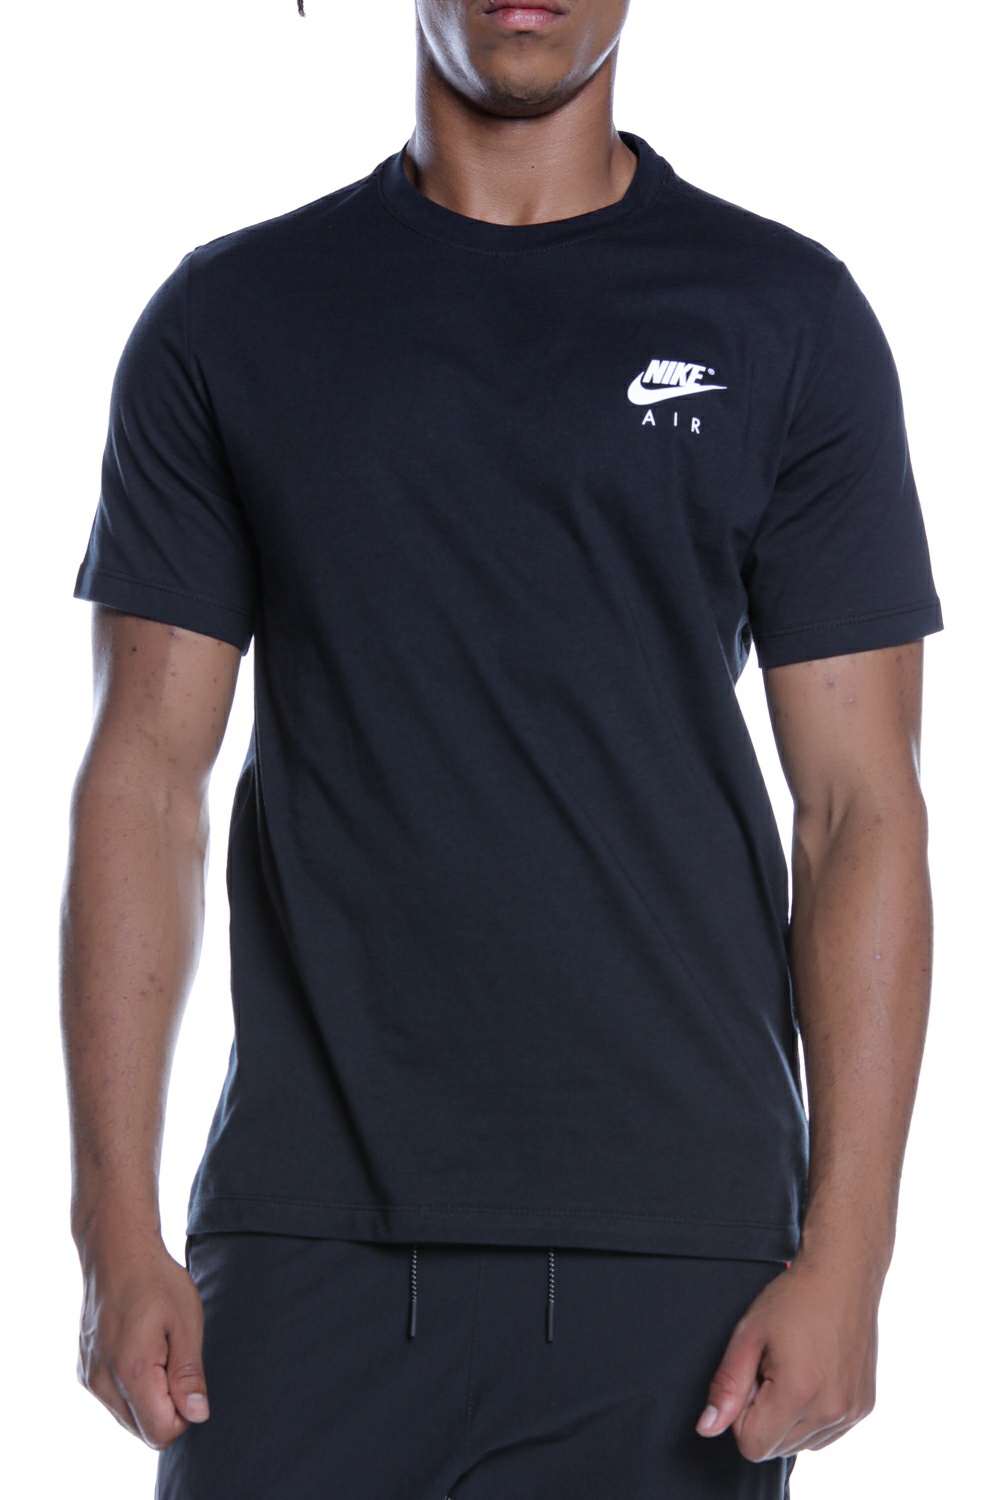 Ανδρικά/Ρούχα/Αθλητικά/T-shirt NIKE - Ανδρικό t-shirt NIKE M NSW TEE NIKE AIR GX μαύρο